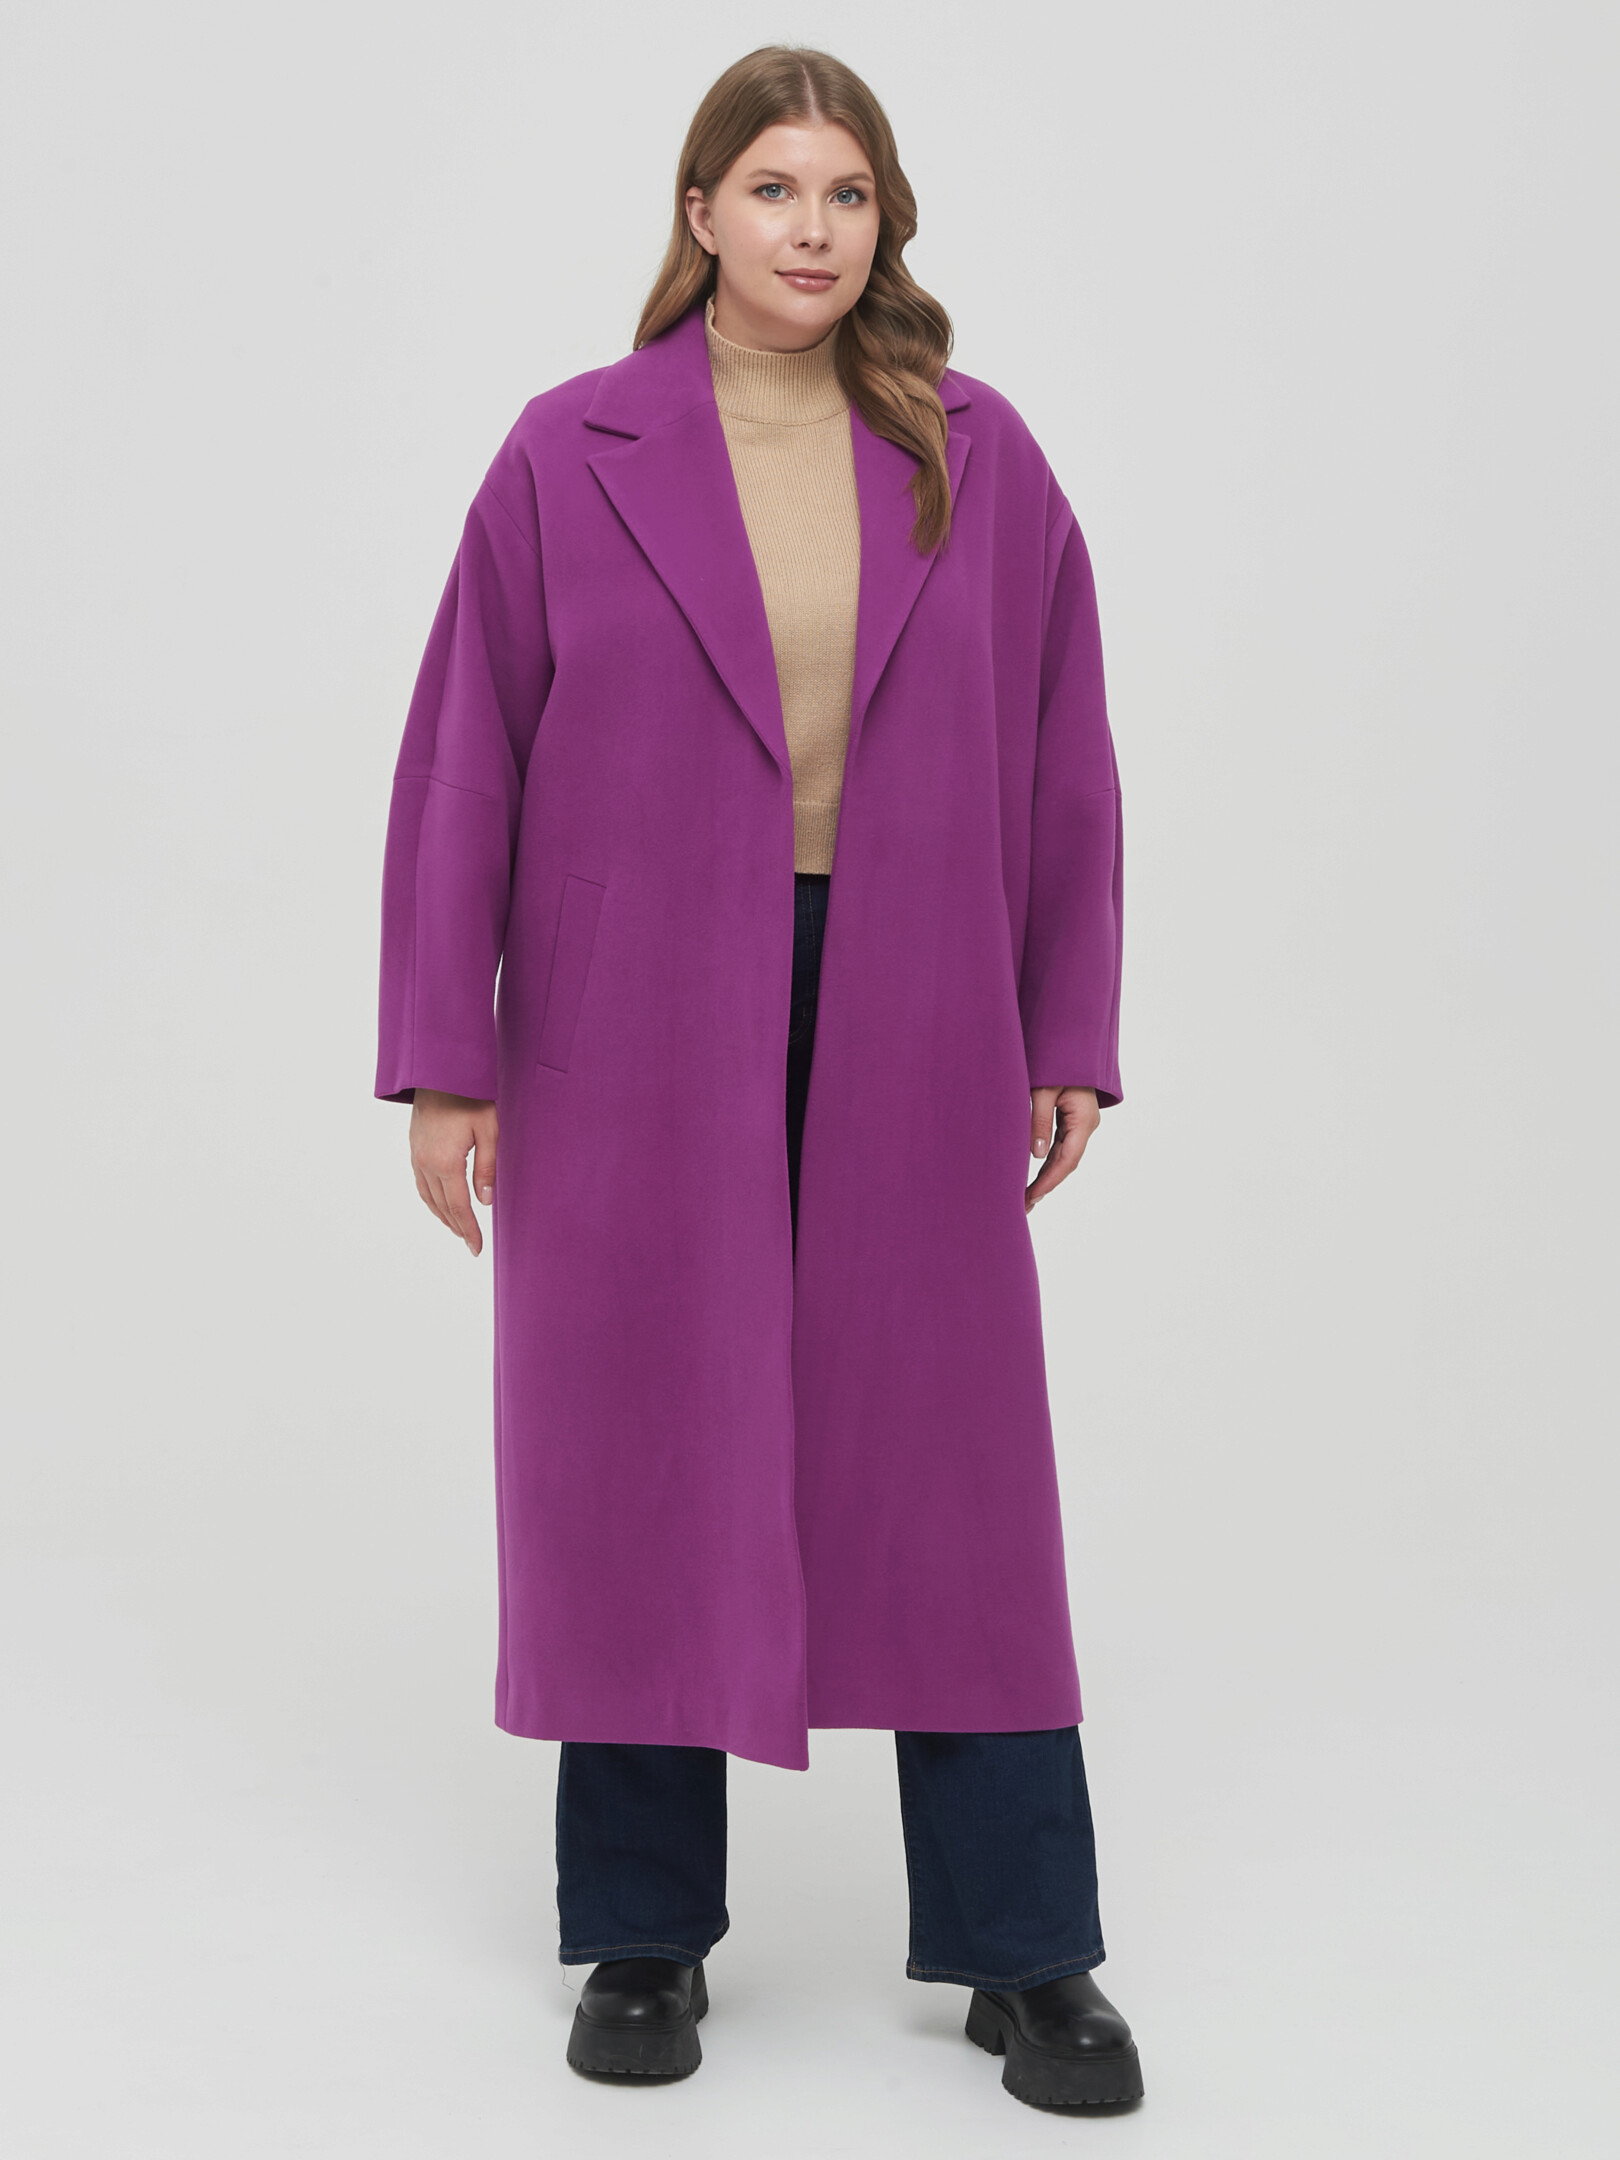 Пальто женское Giulia Rosetti 67115 фиолетовое 48 RU